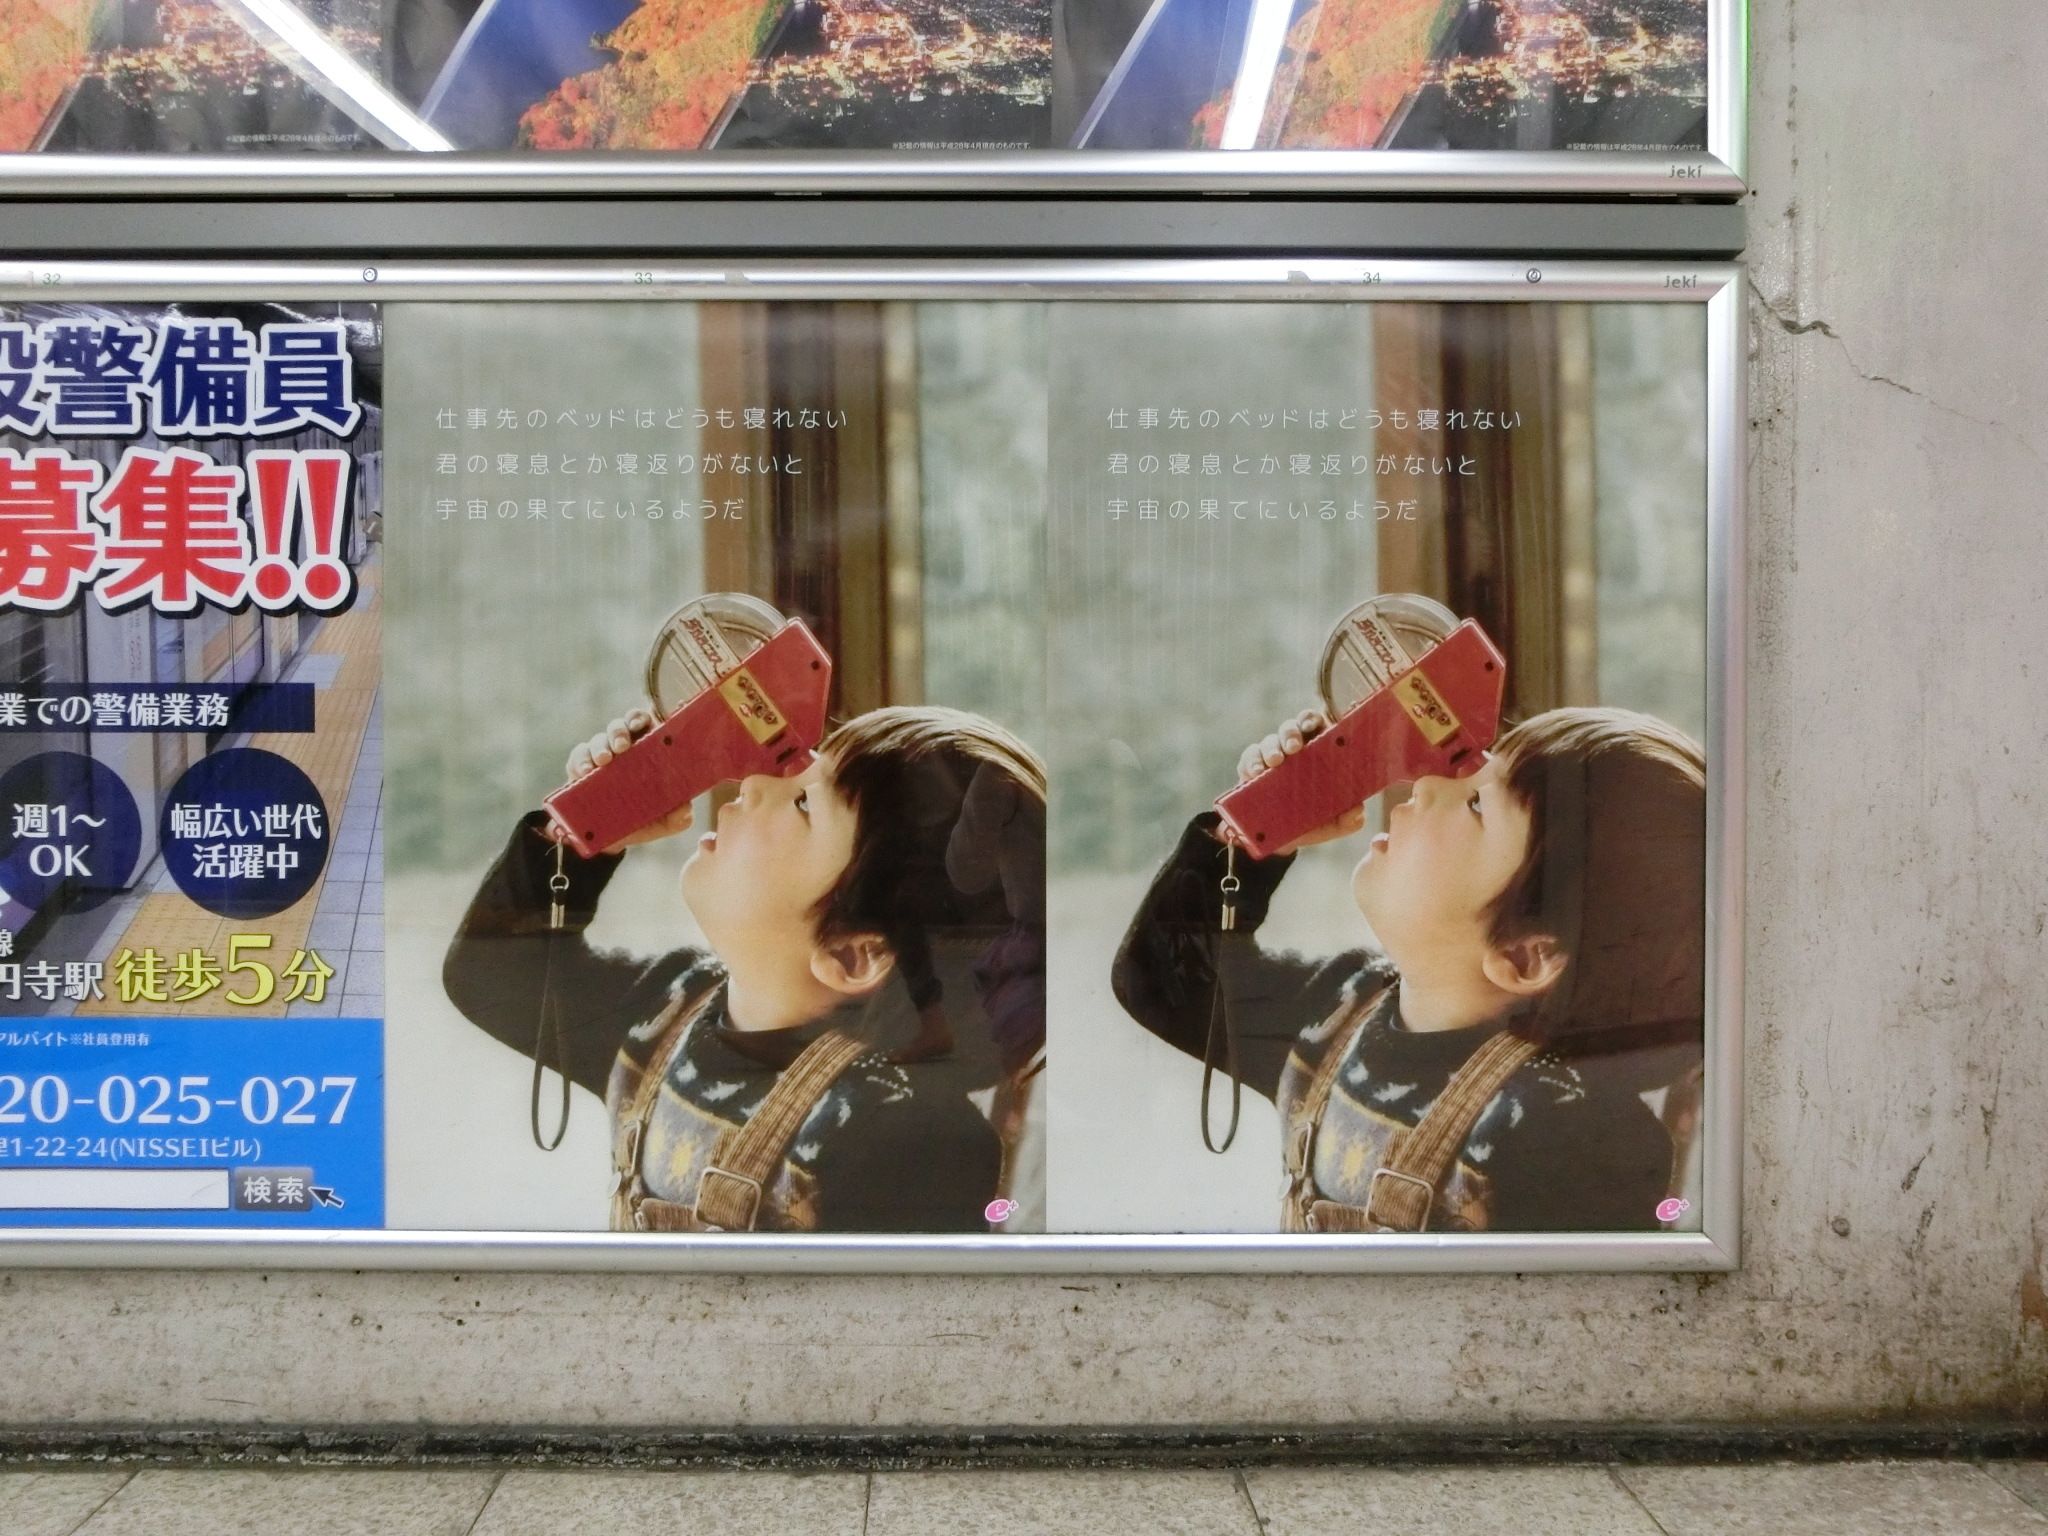 JR渋谷駅に貼られた謎のカワイイ男の子のポスター